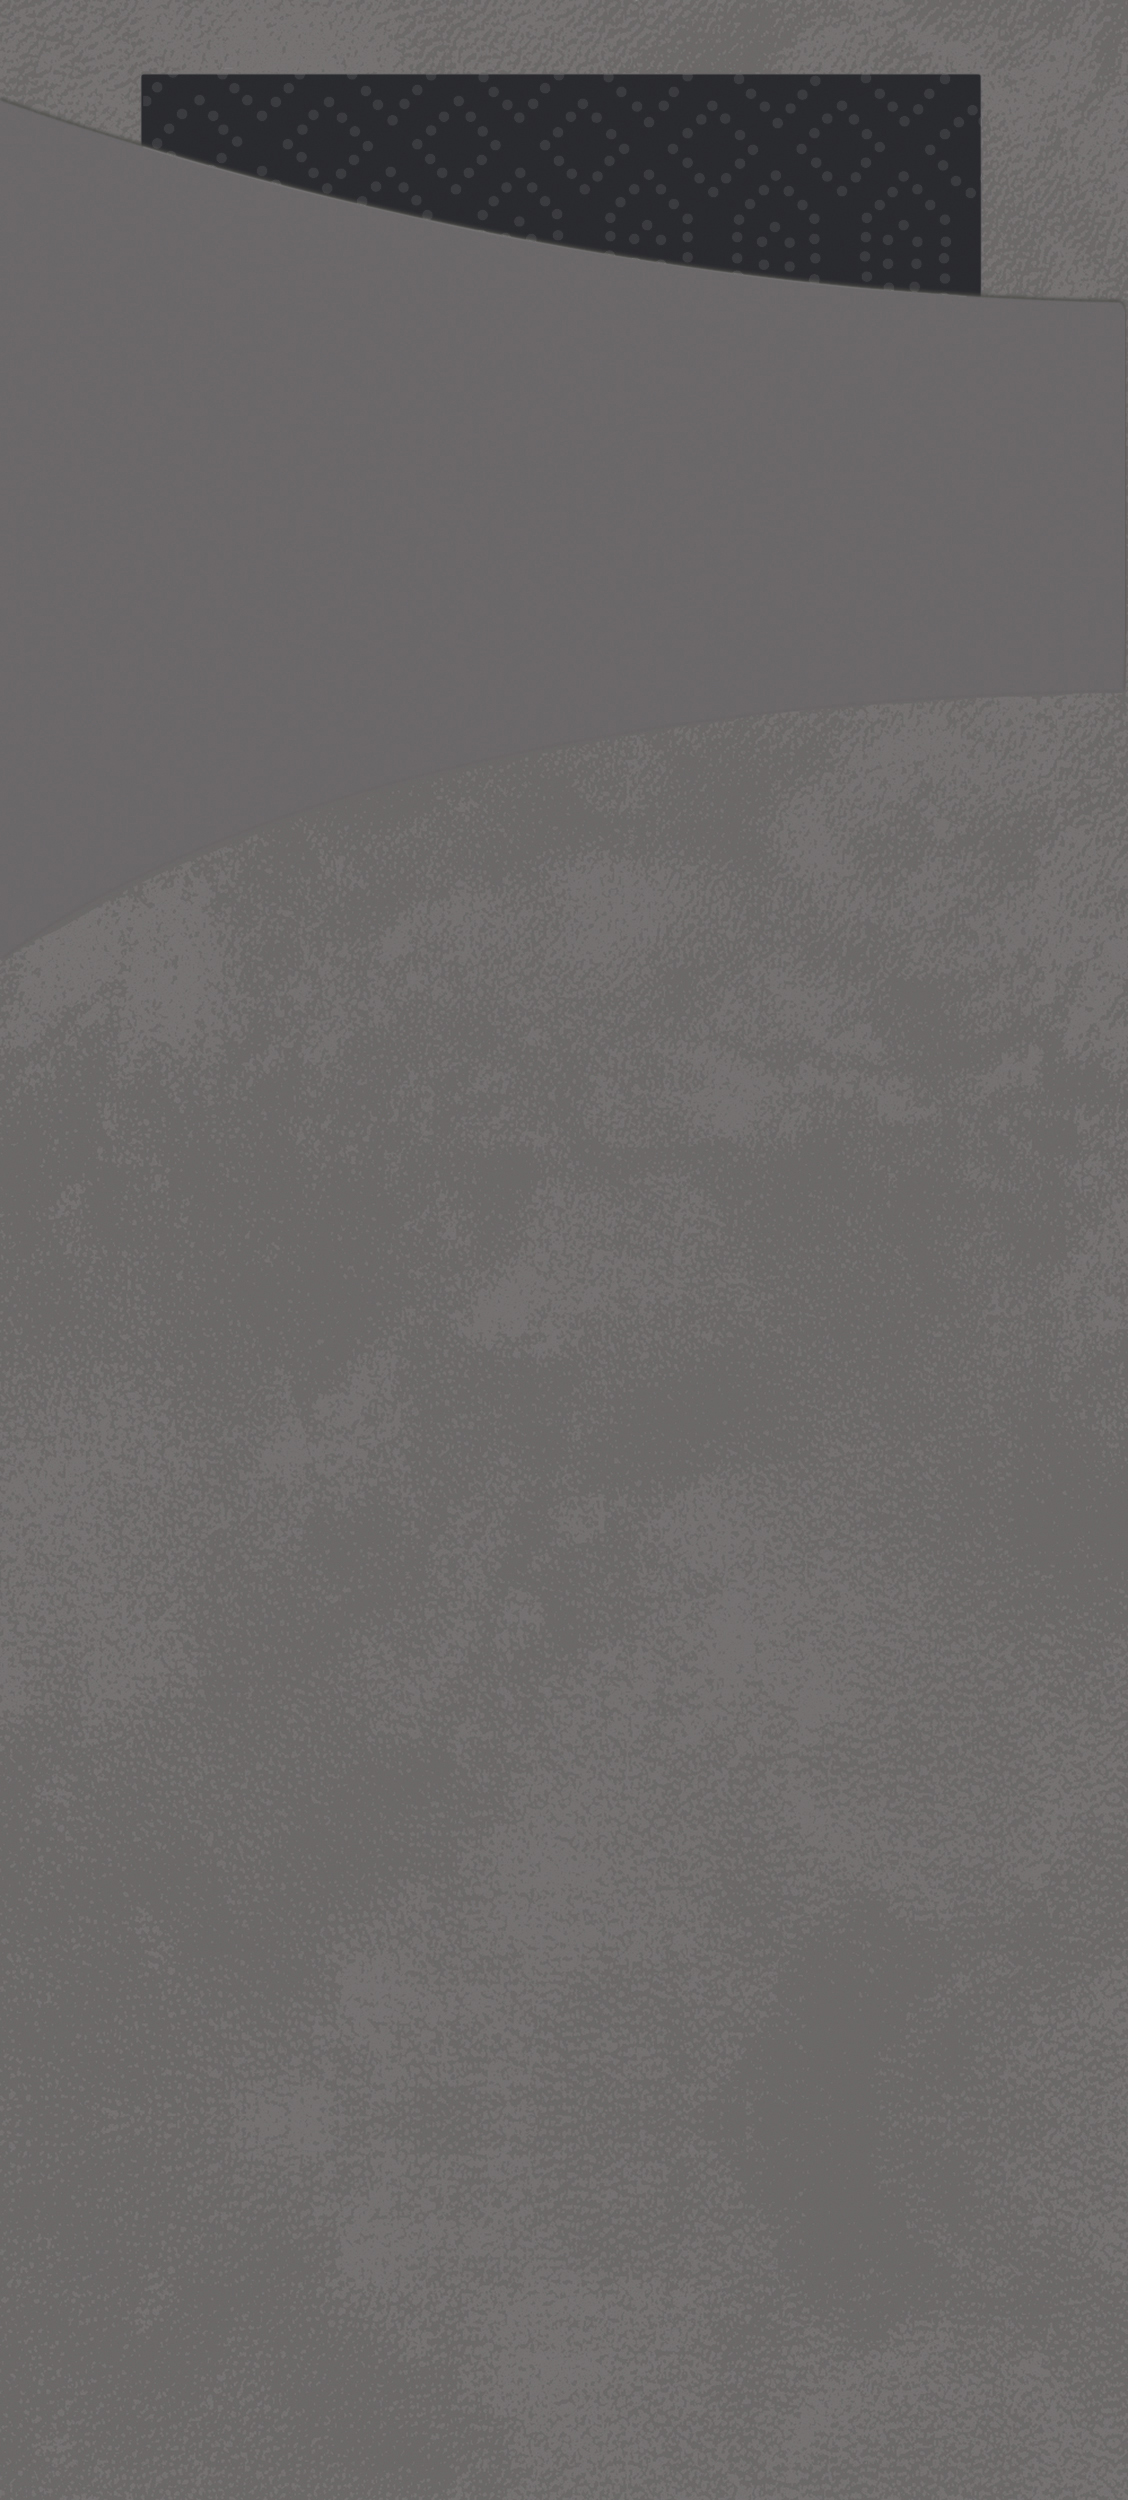 Sacchetto Zelltuch , 190 x 85 mm, granite grey/schwarz